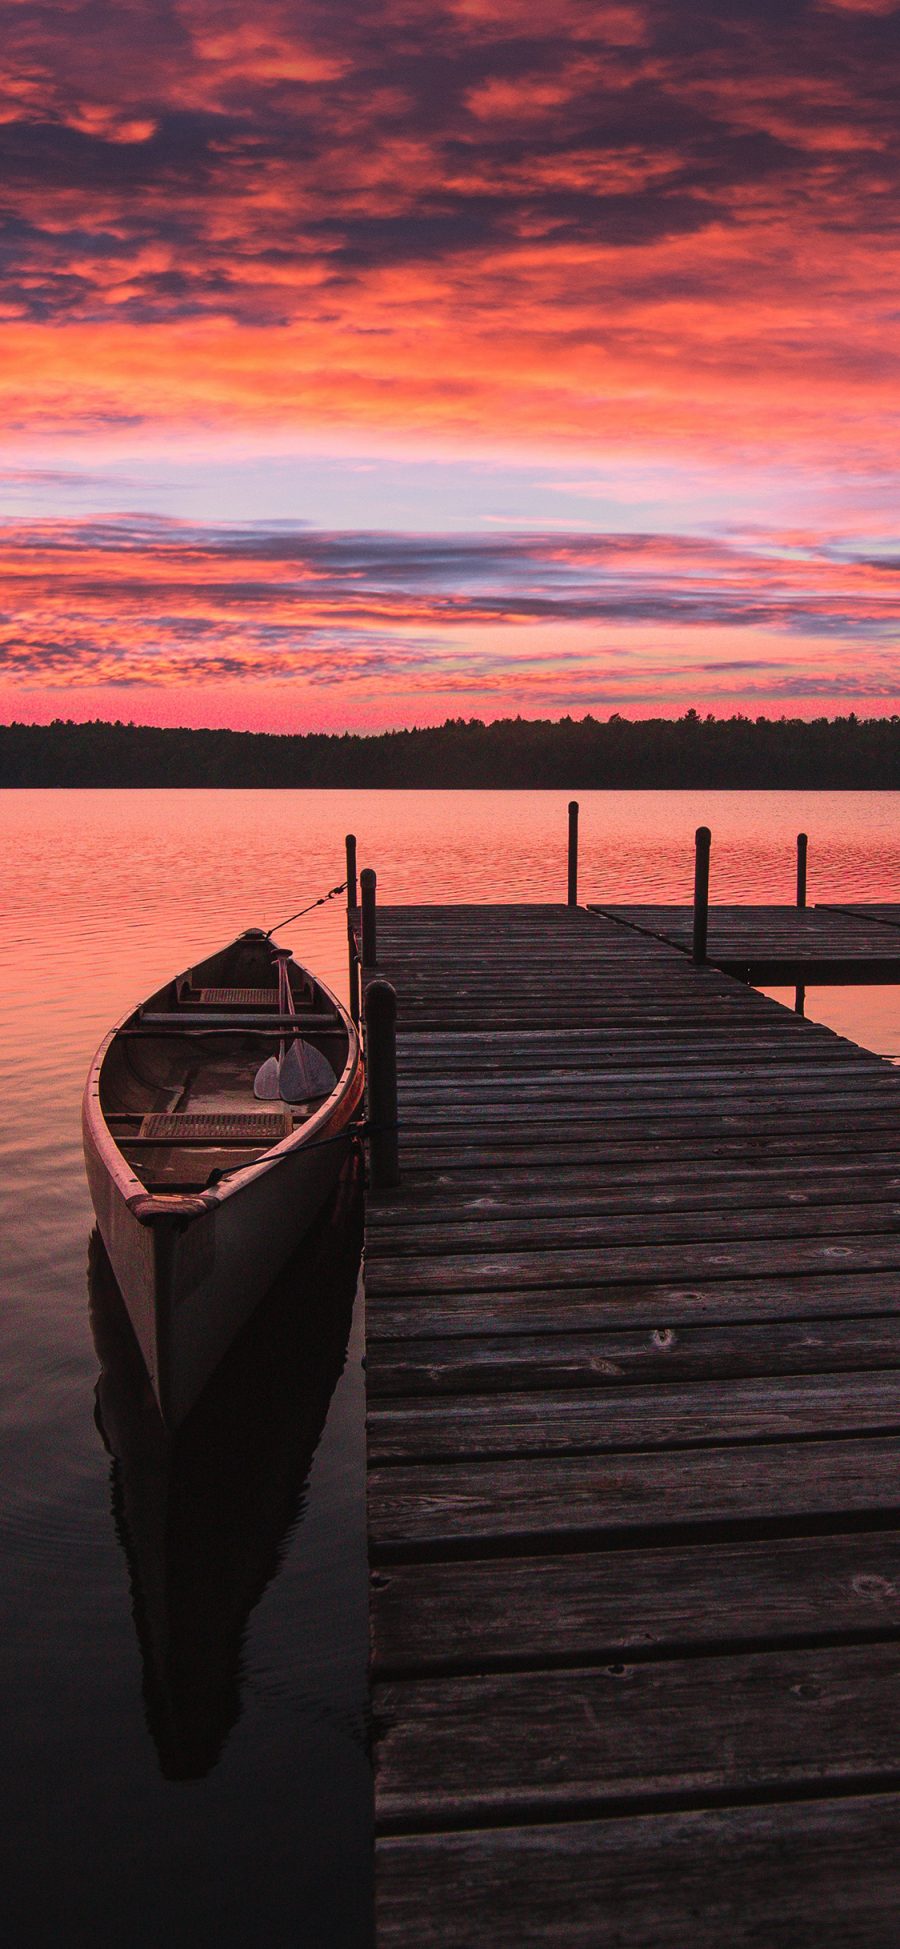 [2436×1125]湖泊 船只 天空 夕阳美景 苹果手机壁纸图片